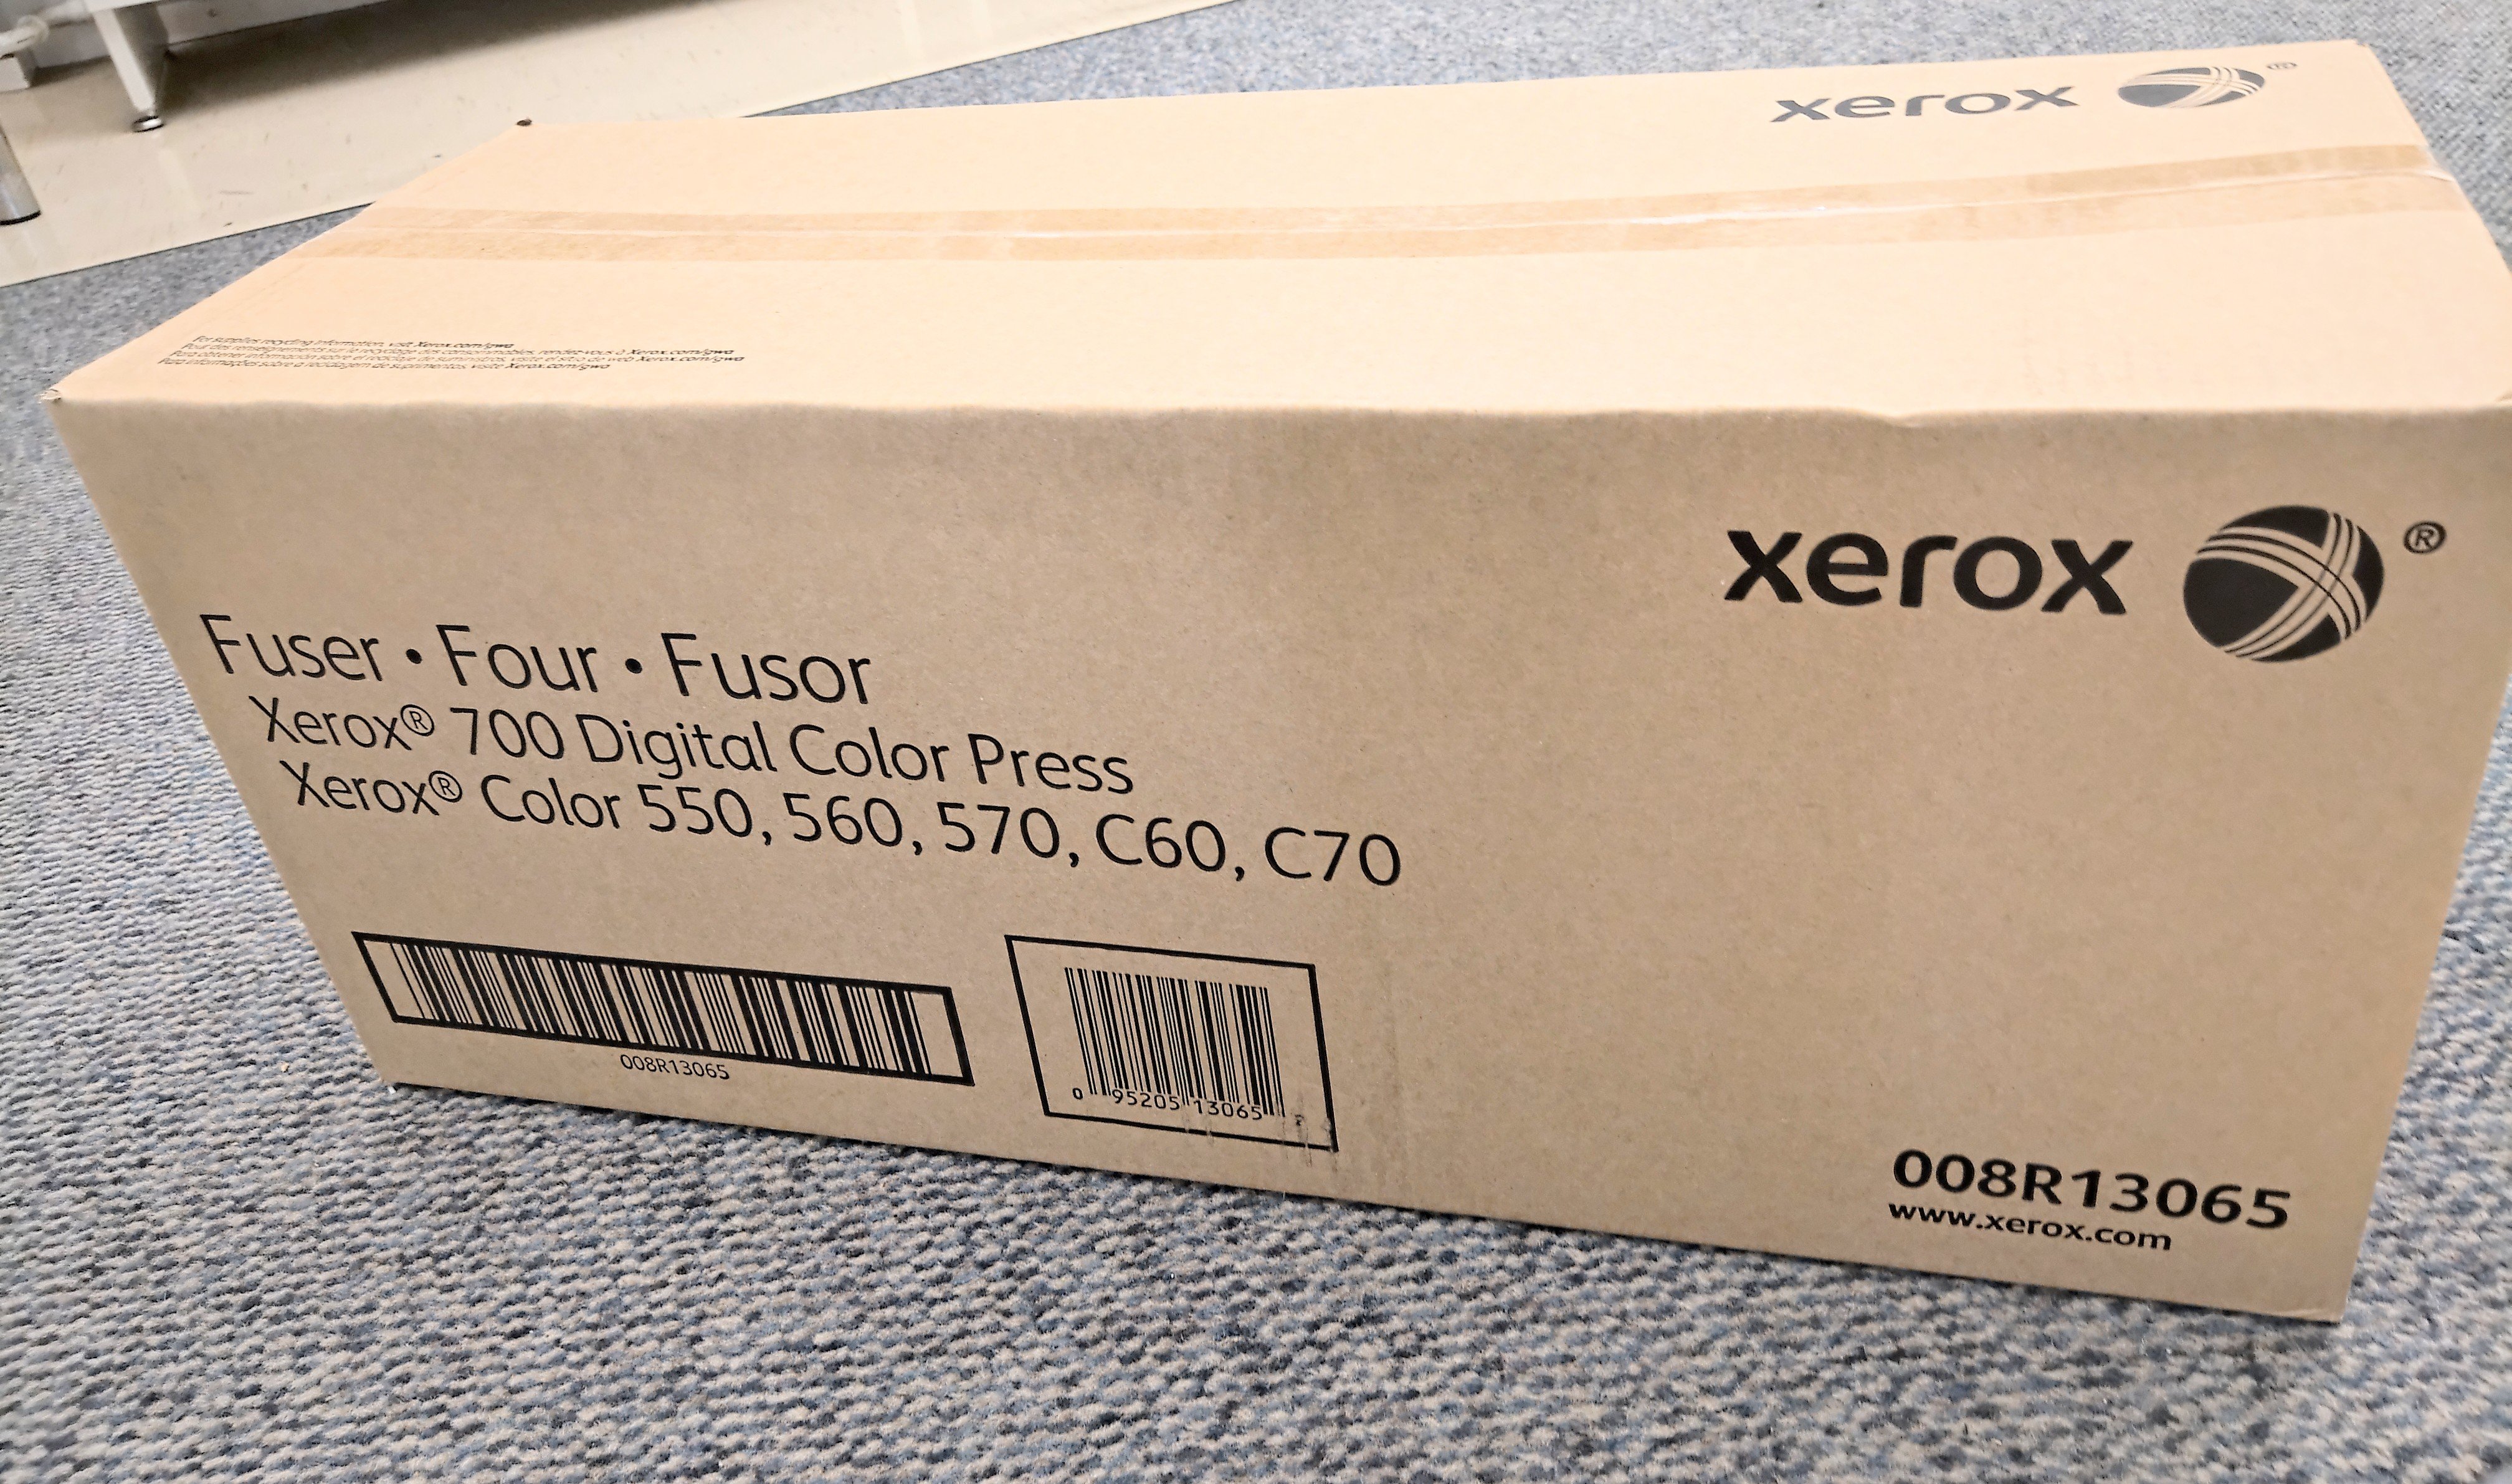 Xerox 700 Fuser